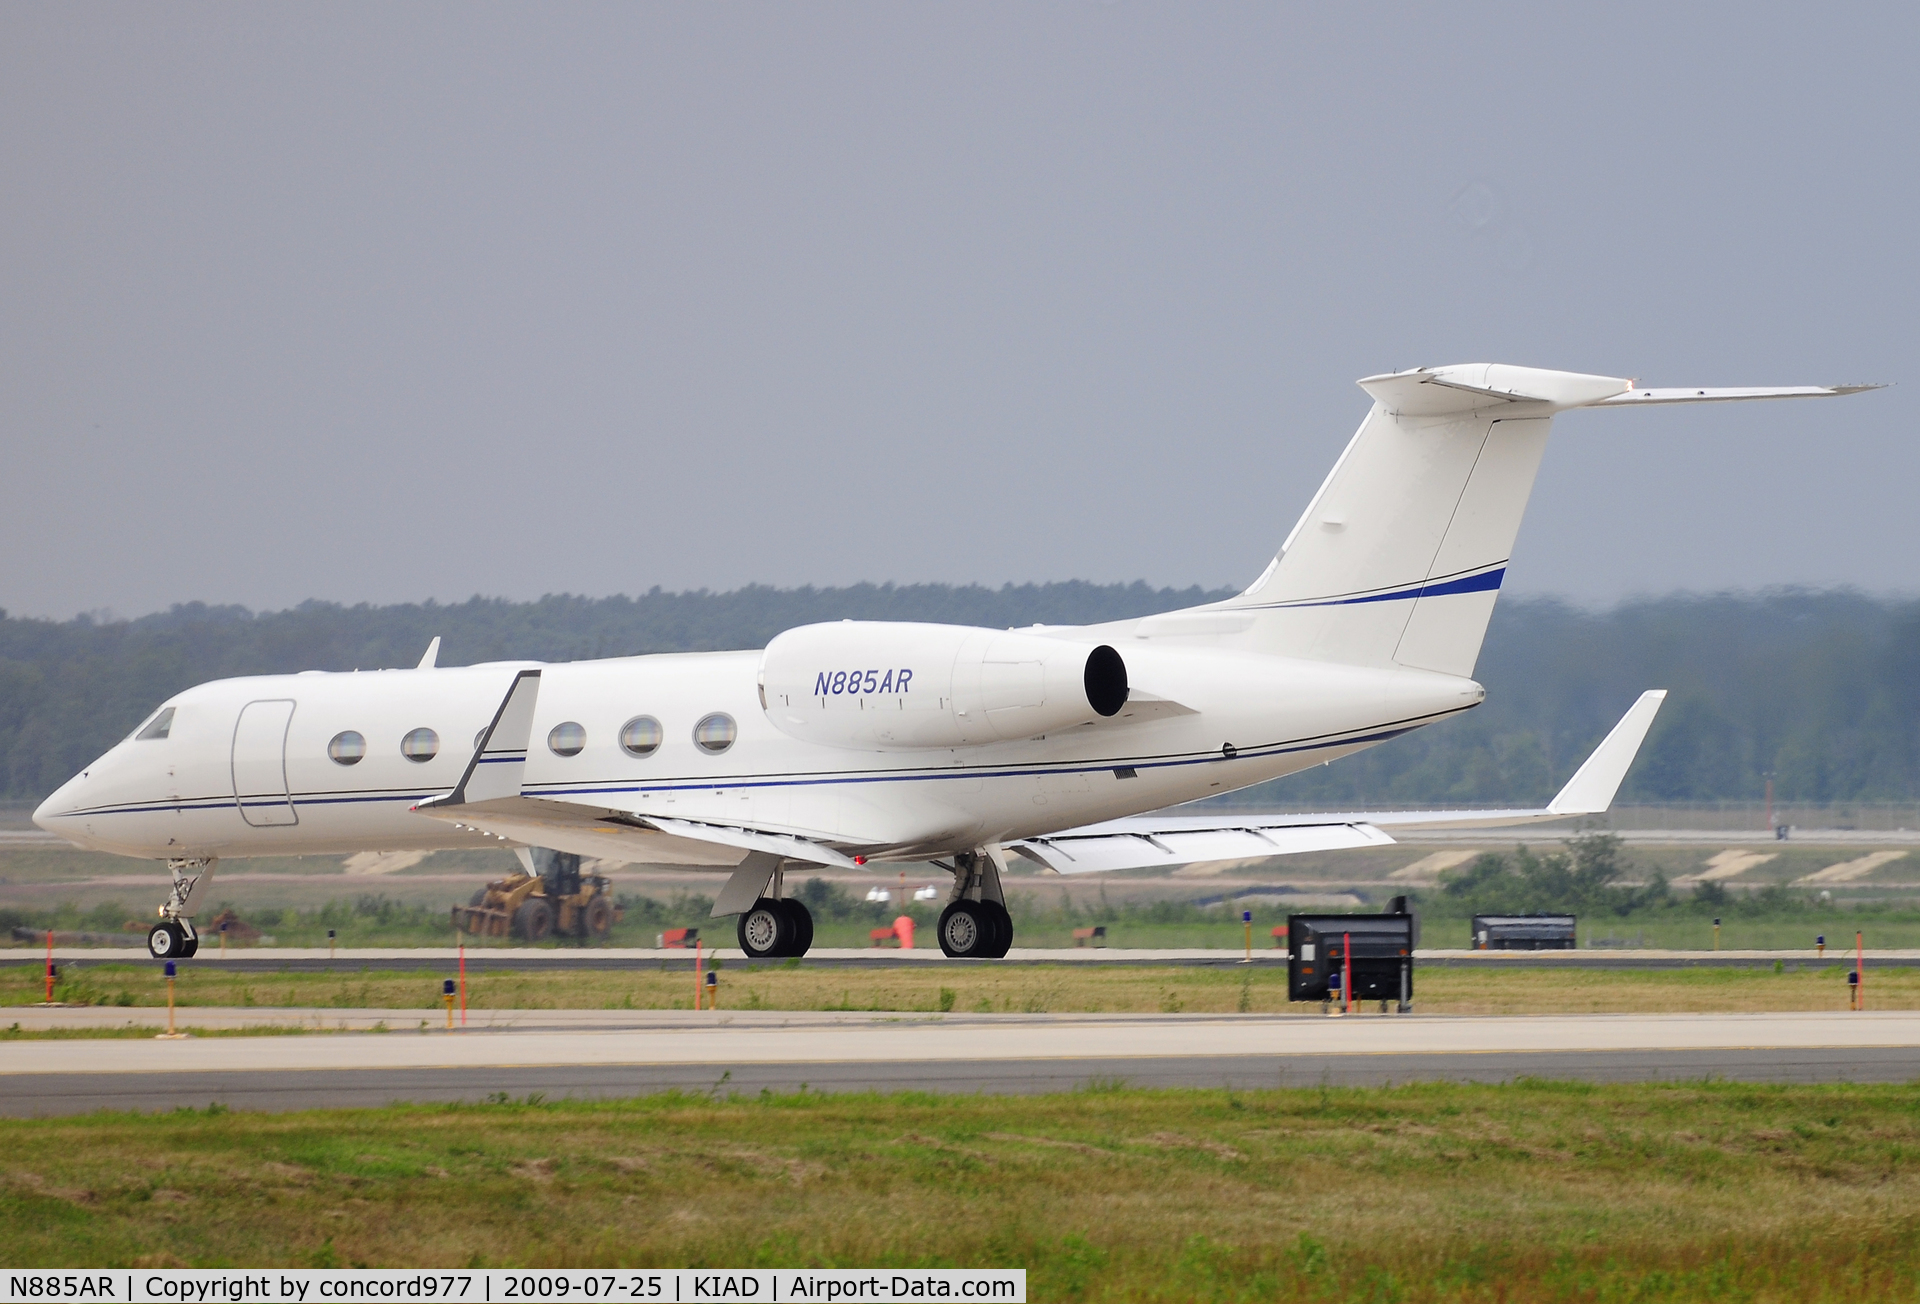 N885AR, 2004 Gulfstream Aerospace GIV-X (G450) C/N 4009, Seen at KIAD on 7/25/2009.